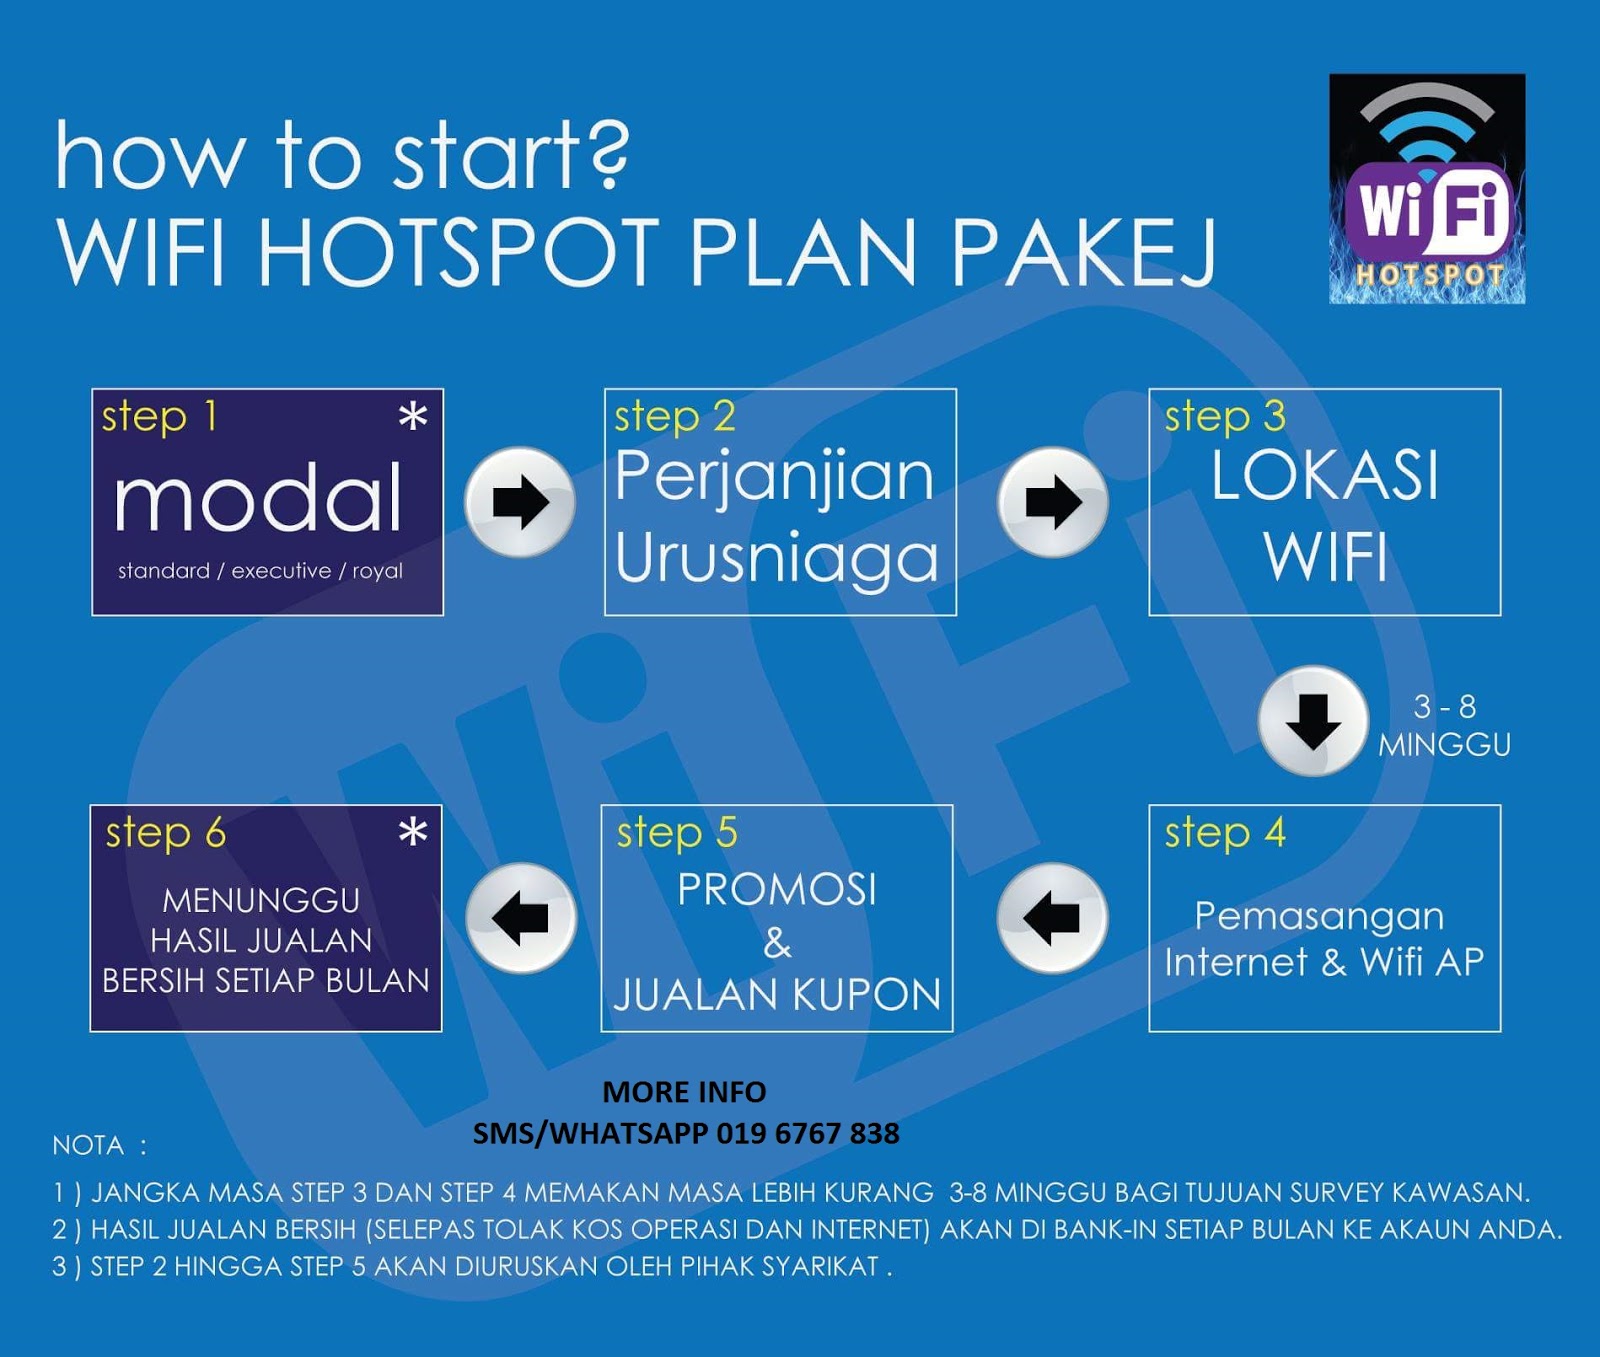 Wifi hotspot business plan